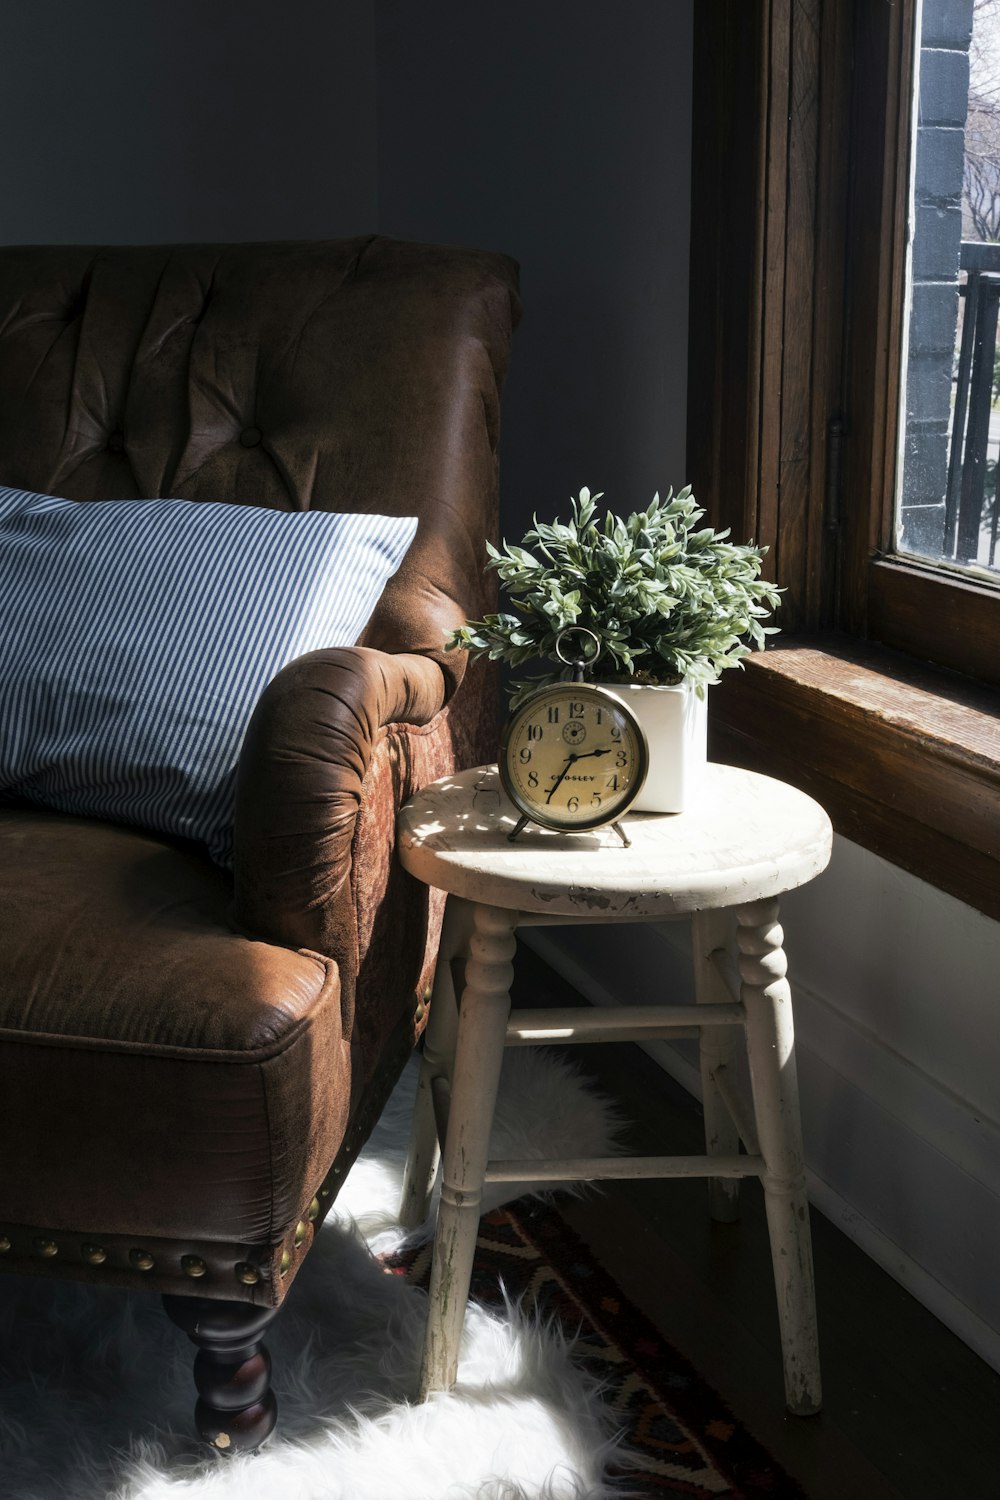 Poltrona da divano imbottita in pelle marrone accanto alla sedia sgabello in legno bianco con orologio analogico rotondo in metallo grigio